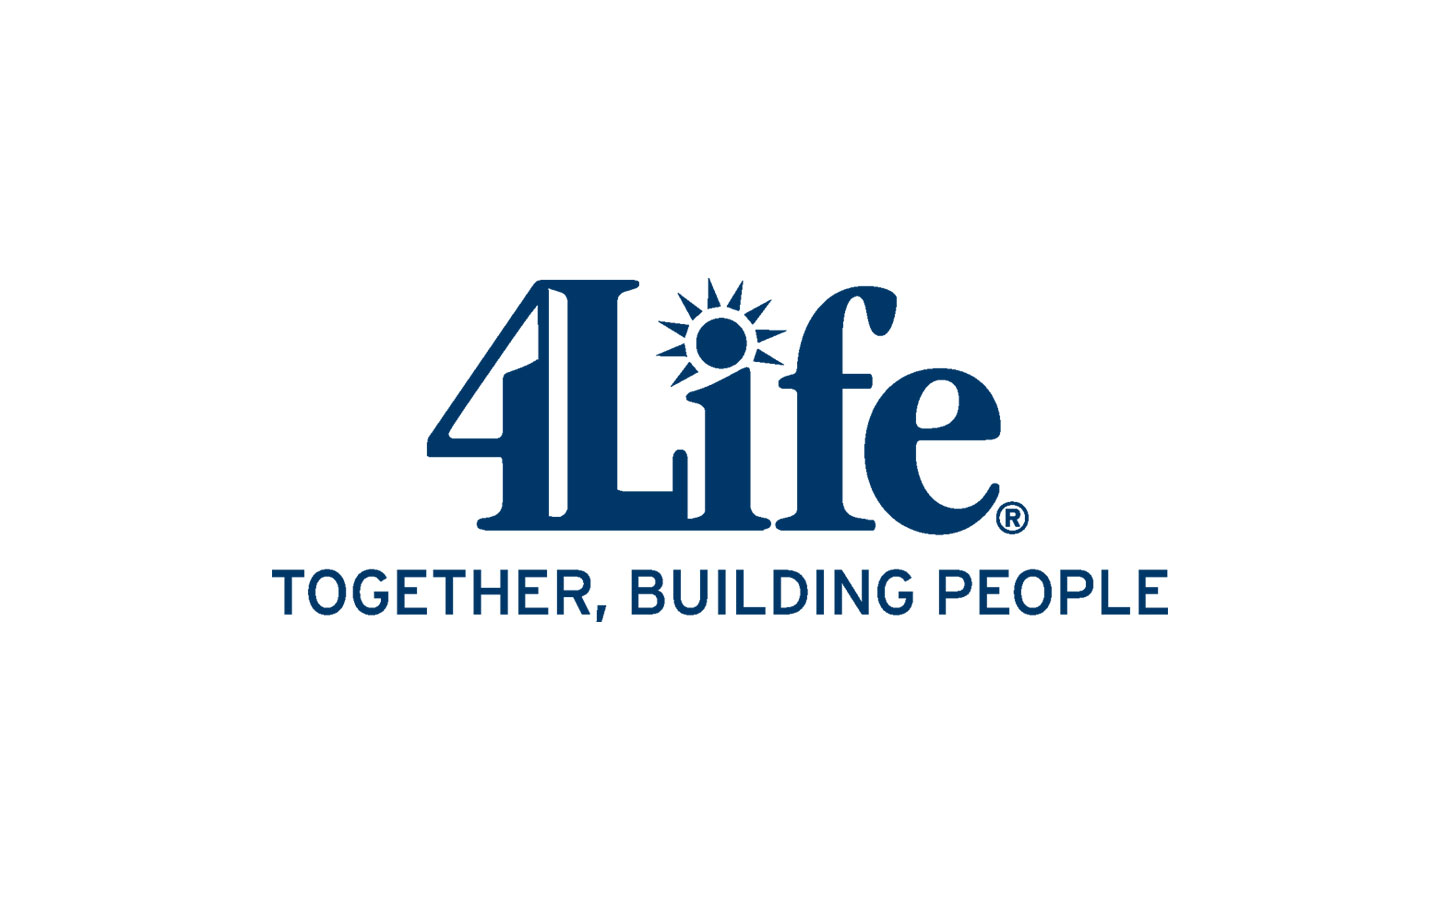 4 g life. 4life. 4life research. 4life research логотип. Бизнес 4life сетевой.